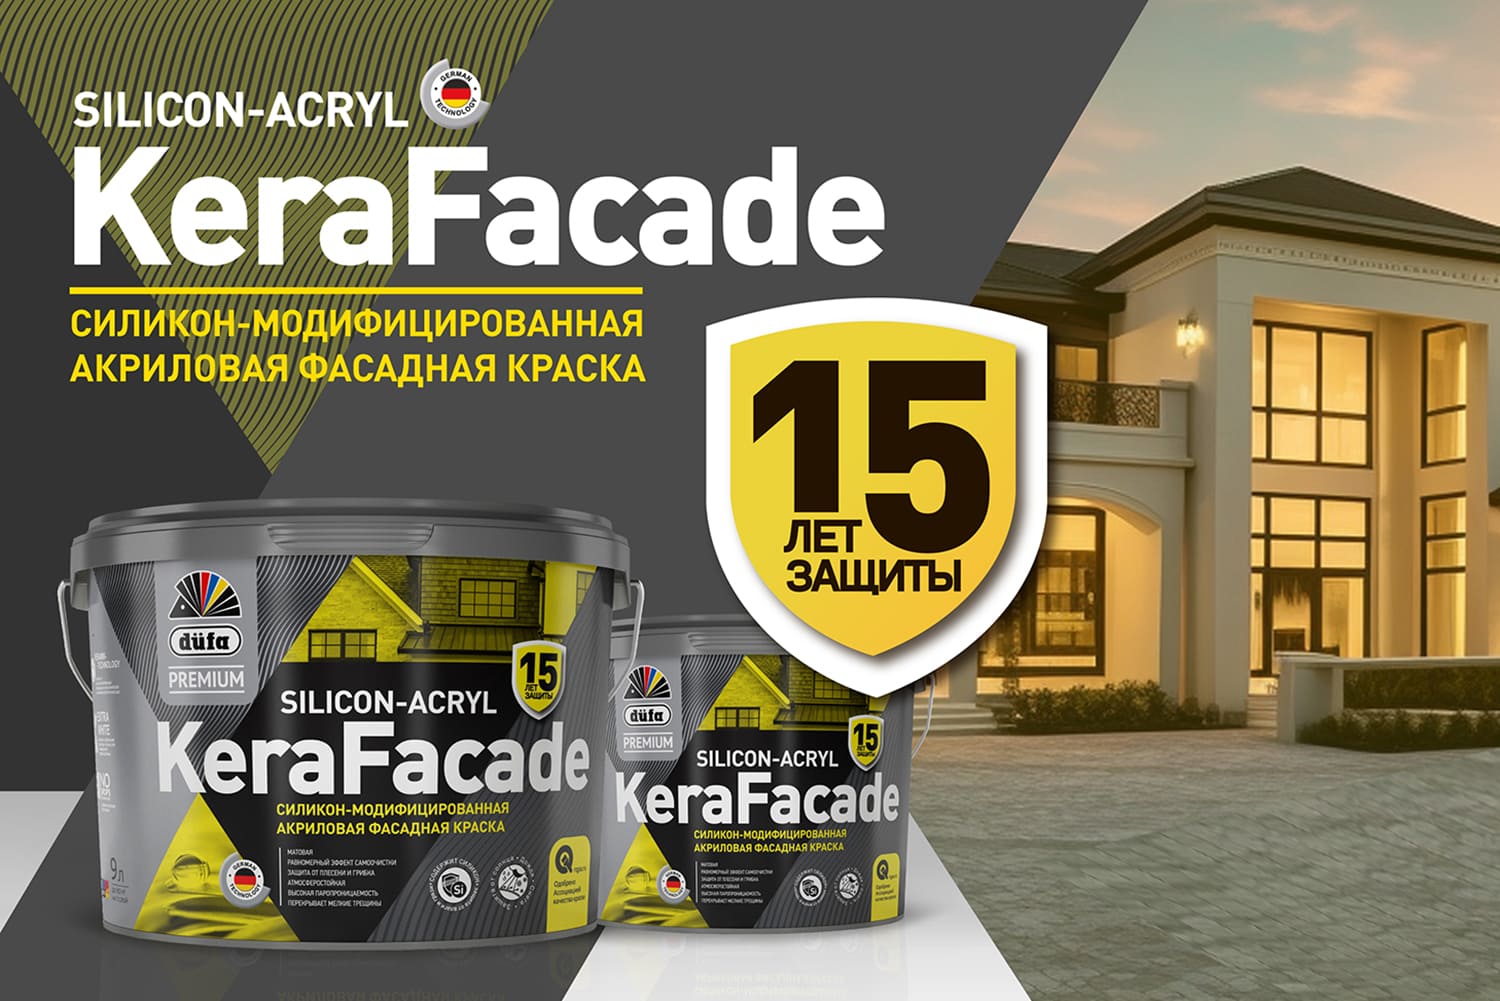 düfa Premium KeraFacade – защита на 15 лет